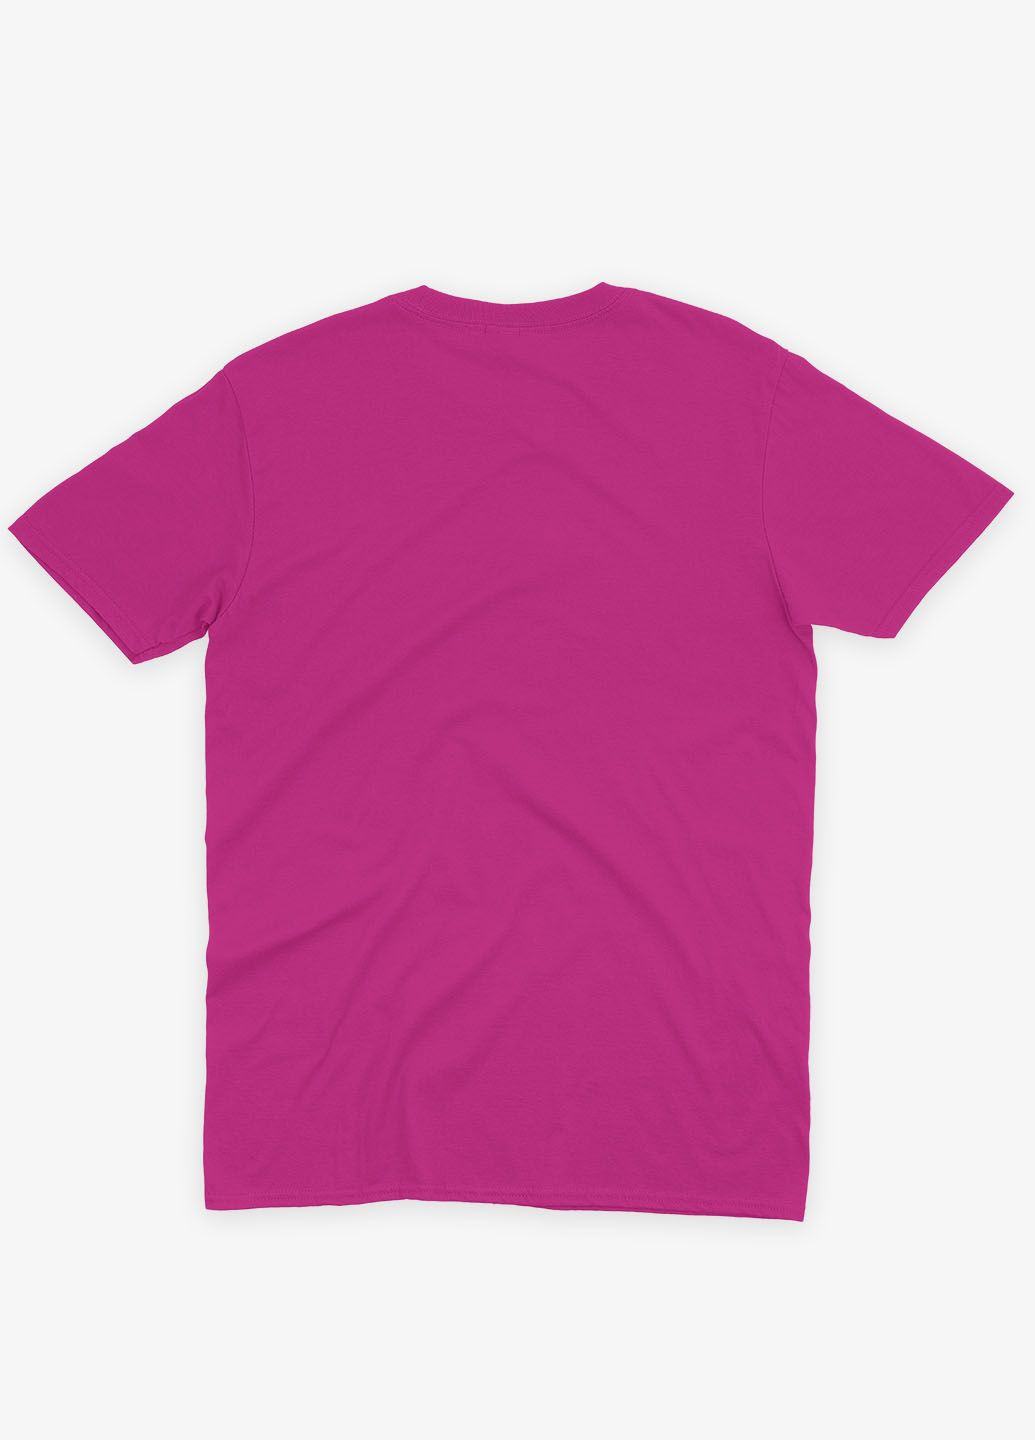 Розовая демисезонная футболка для мальчика с принтом супергероя - халк (ts001-1-fuxj-006-018-014-b) Modno